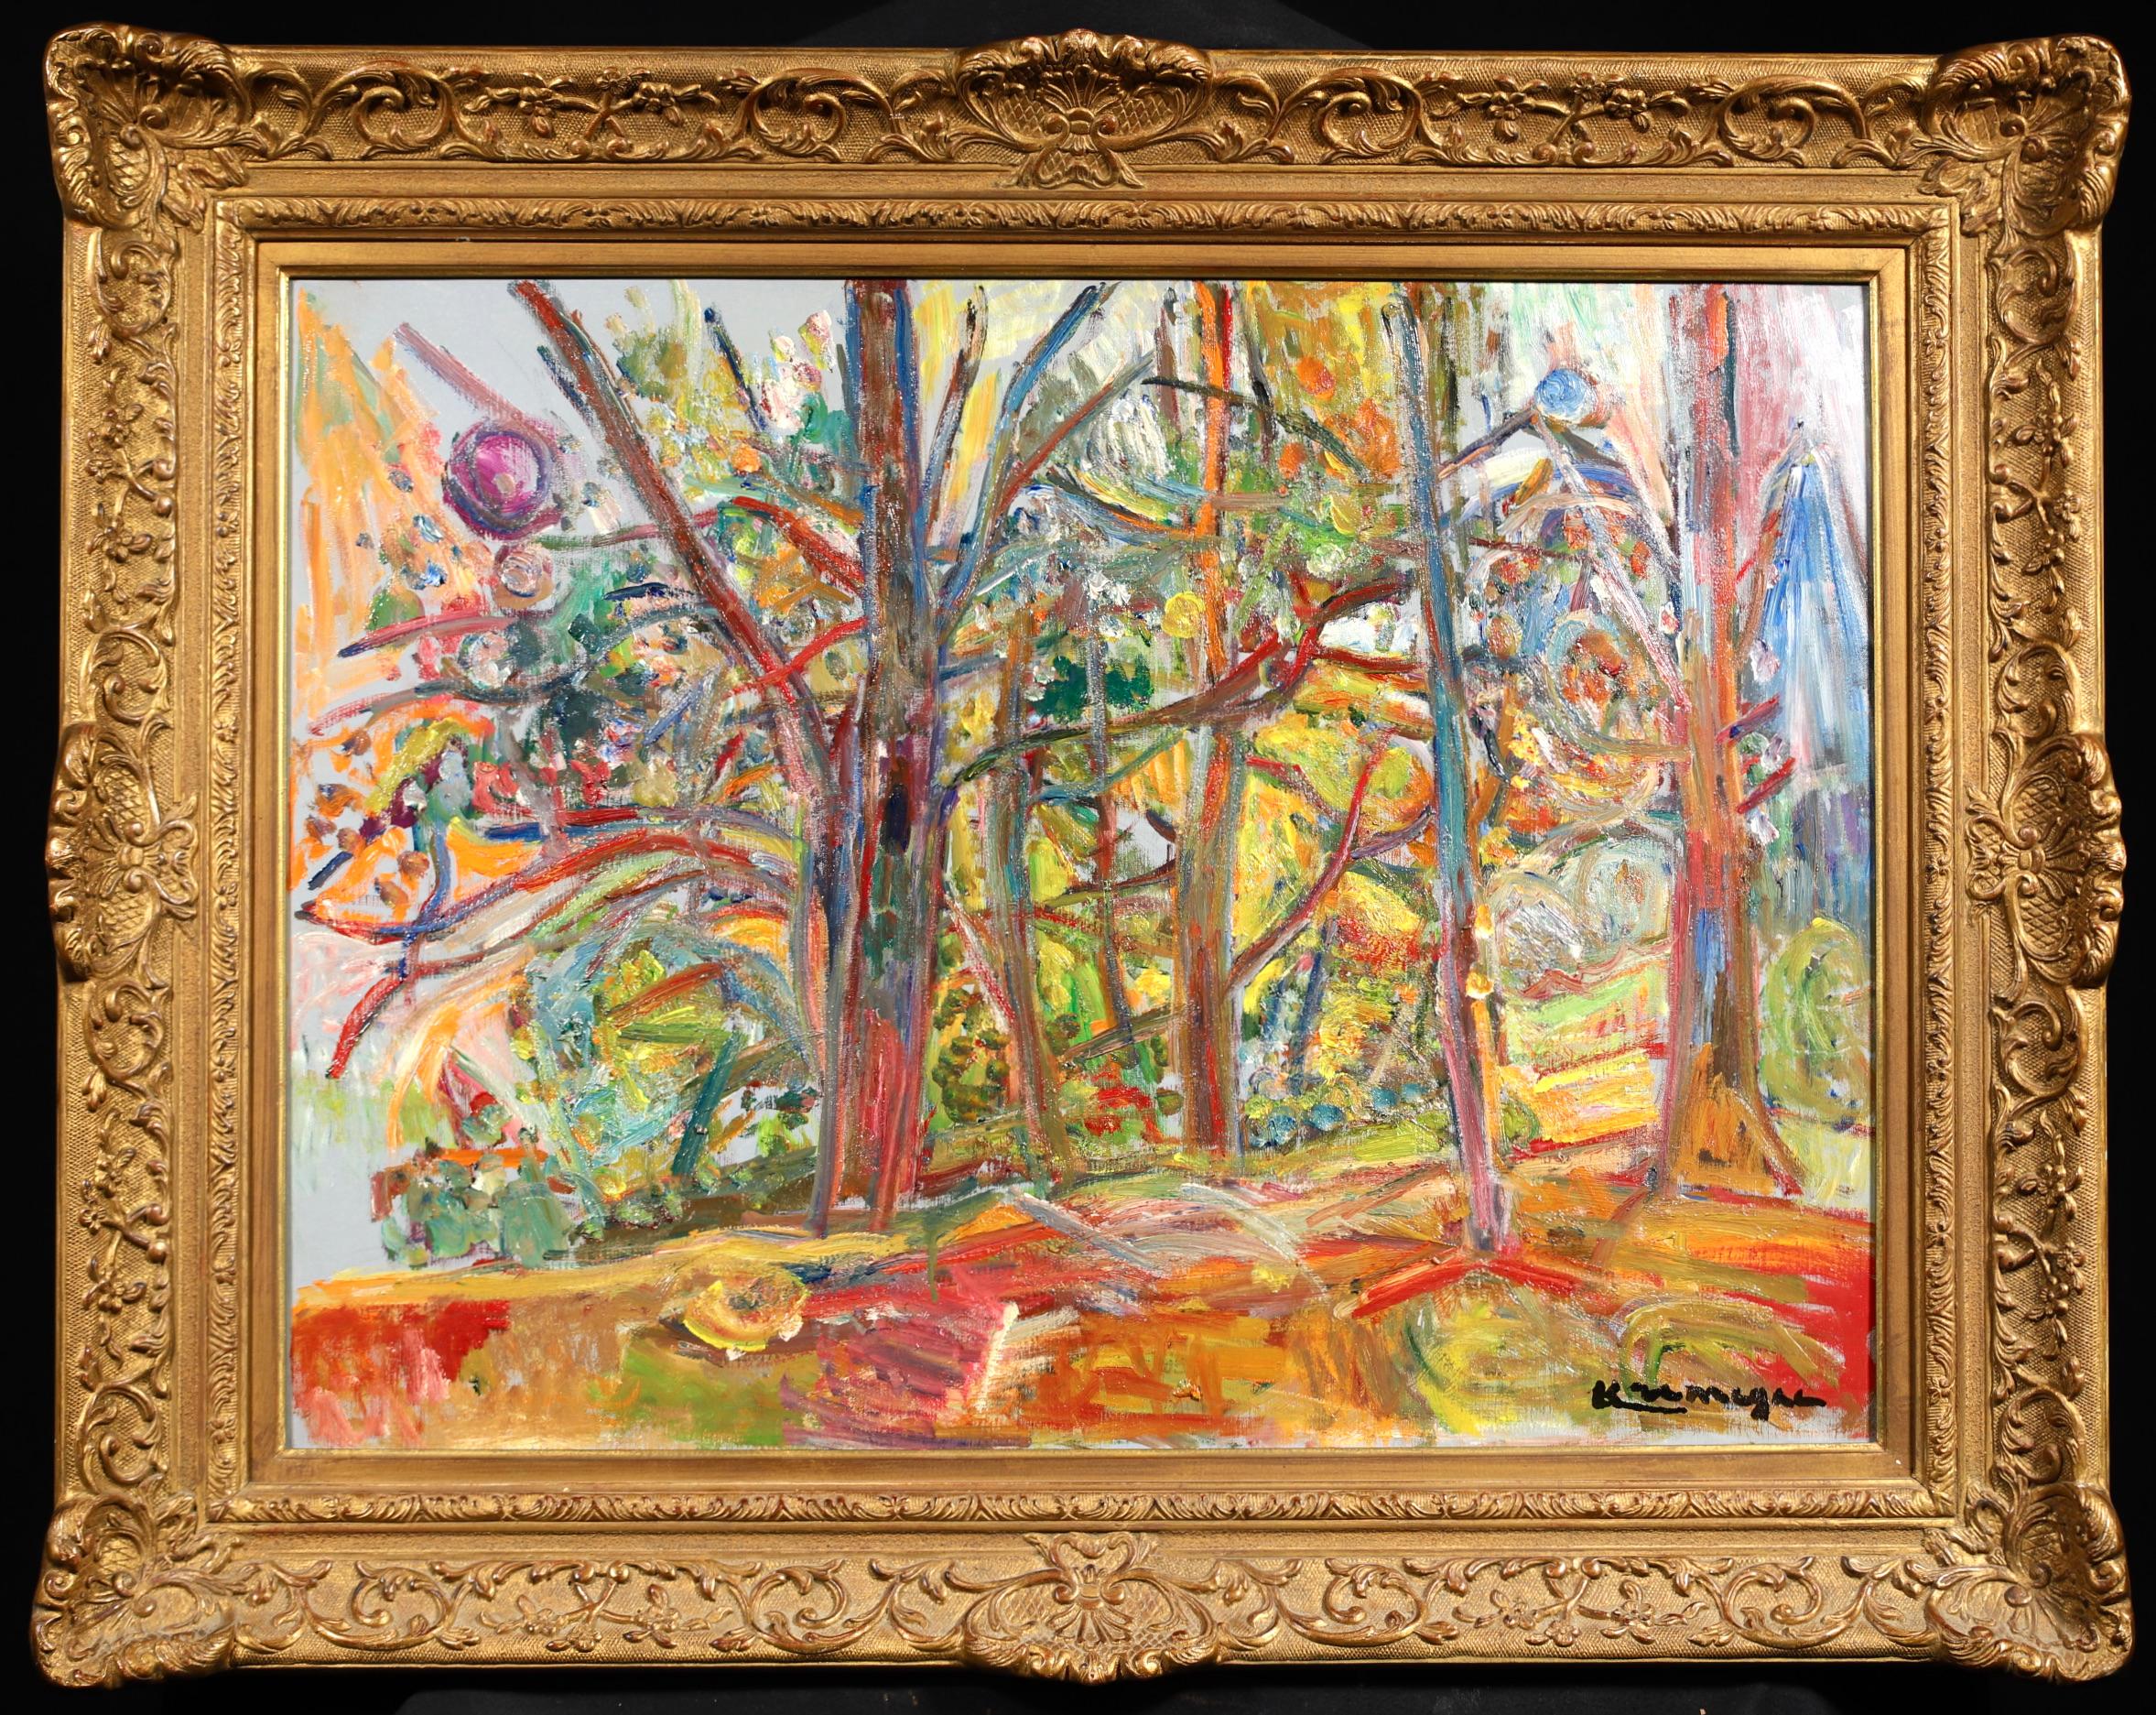 Signiertes expressionistisches Landschaftsöl auf Leinwand um 1950 des litauisch-französischen Malers Pinchus Kremegne. Dieses atemberaubende und farbenprächtige Stück stammt aus Ceret in den Pyrenäen in Südfrankreich.

Unterschrift:
Signiert unten